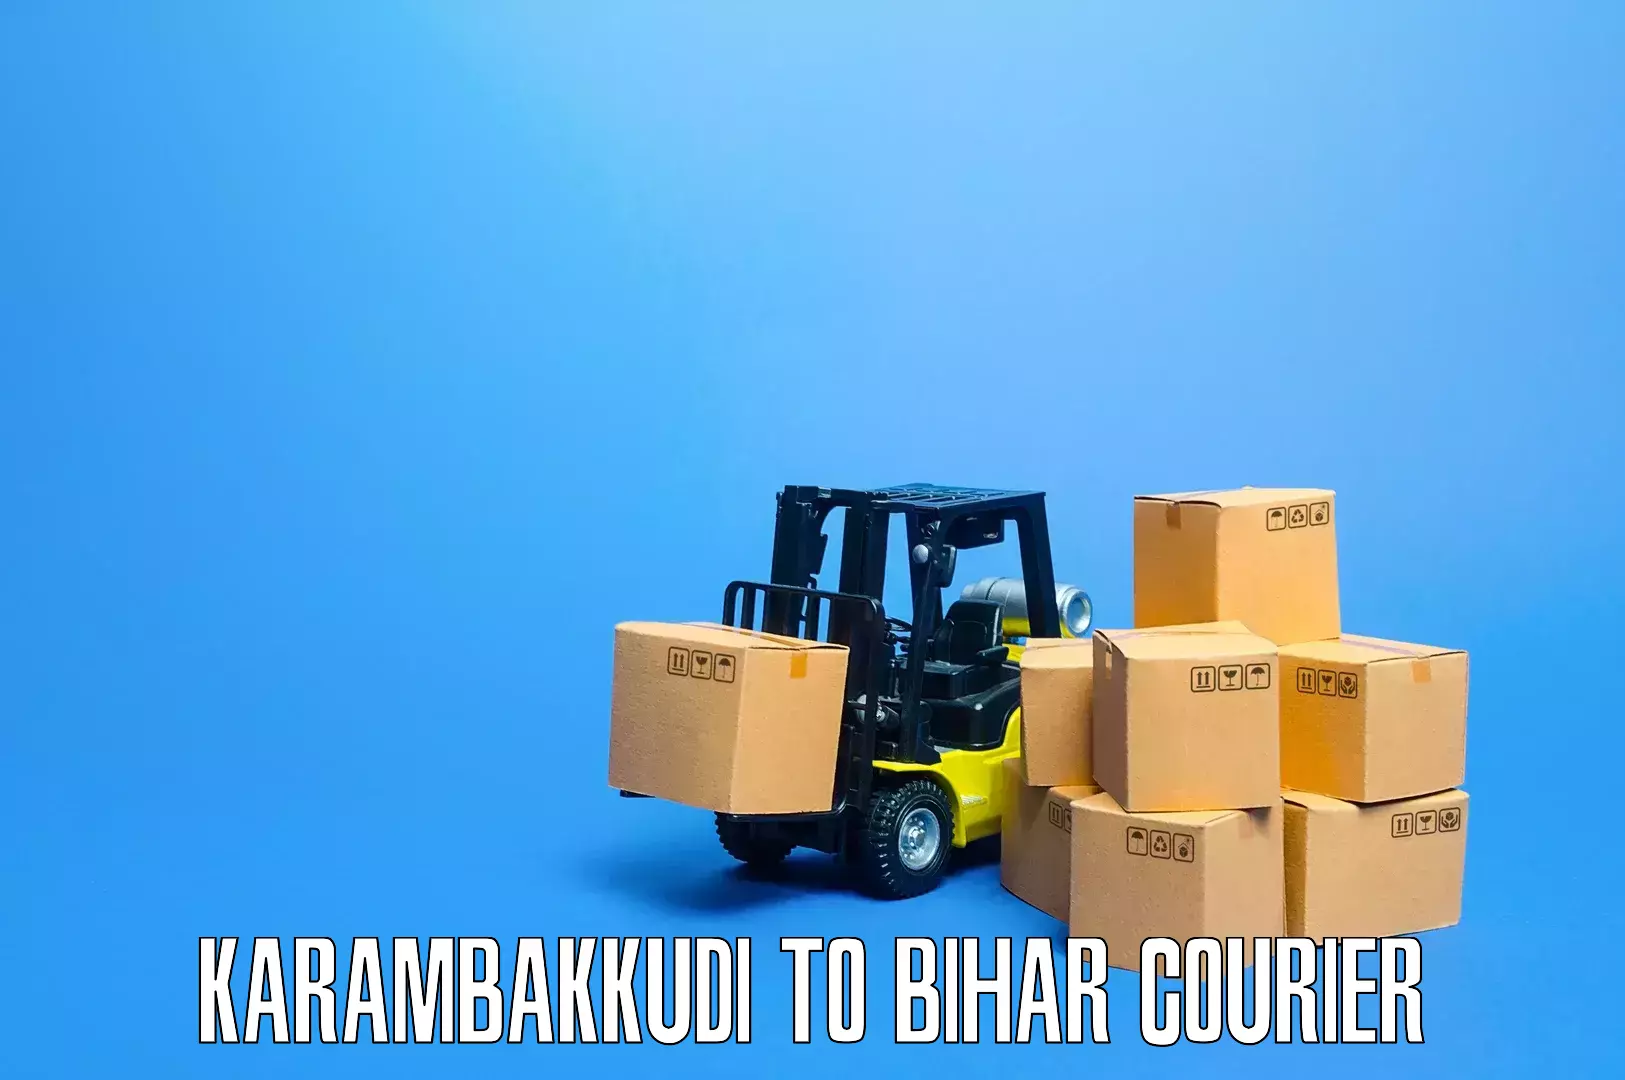 Furniture transport services Karambakkudi to Jalalgarh